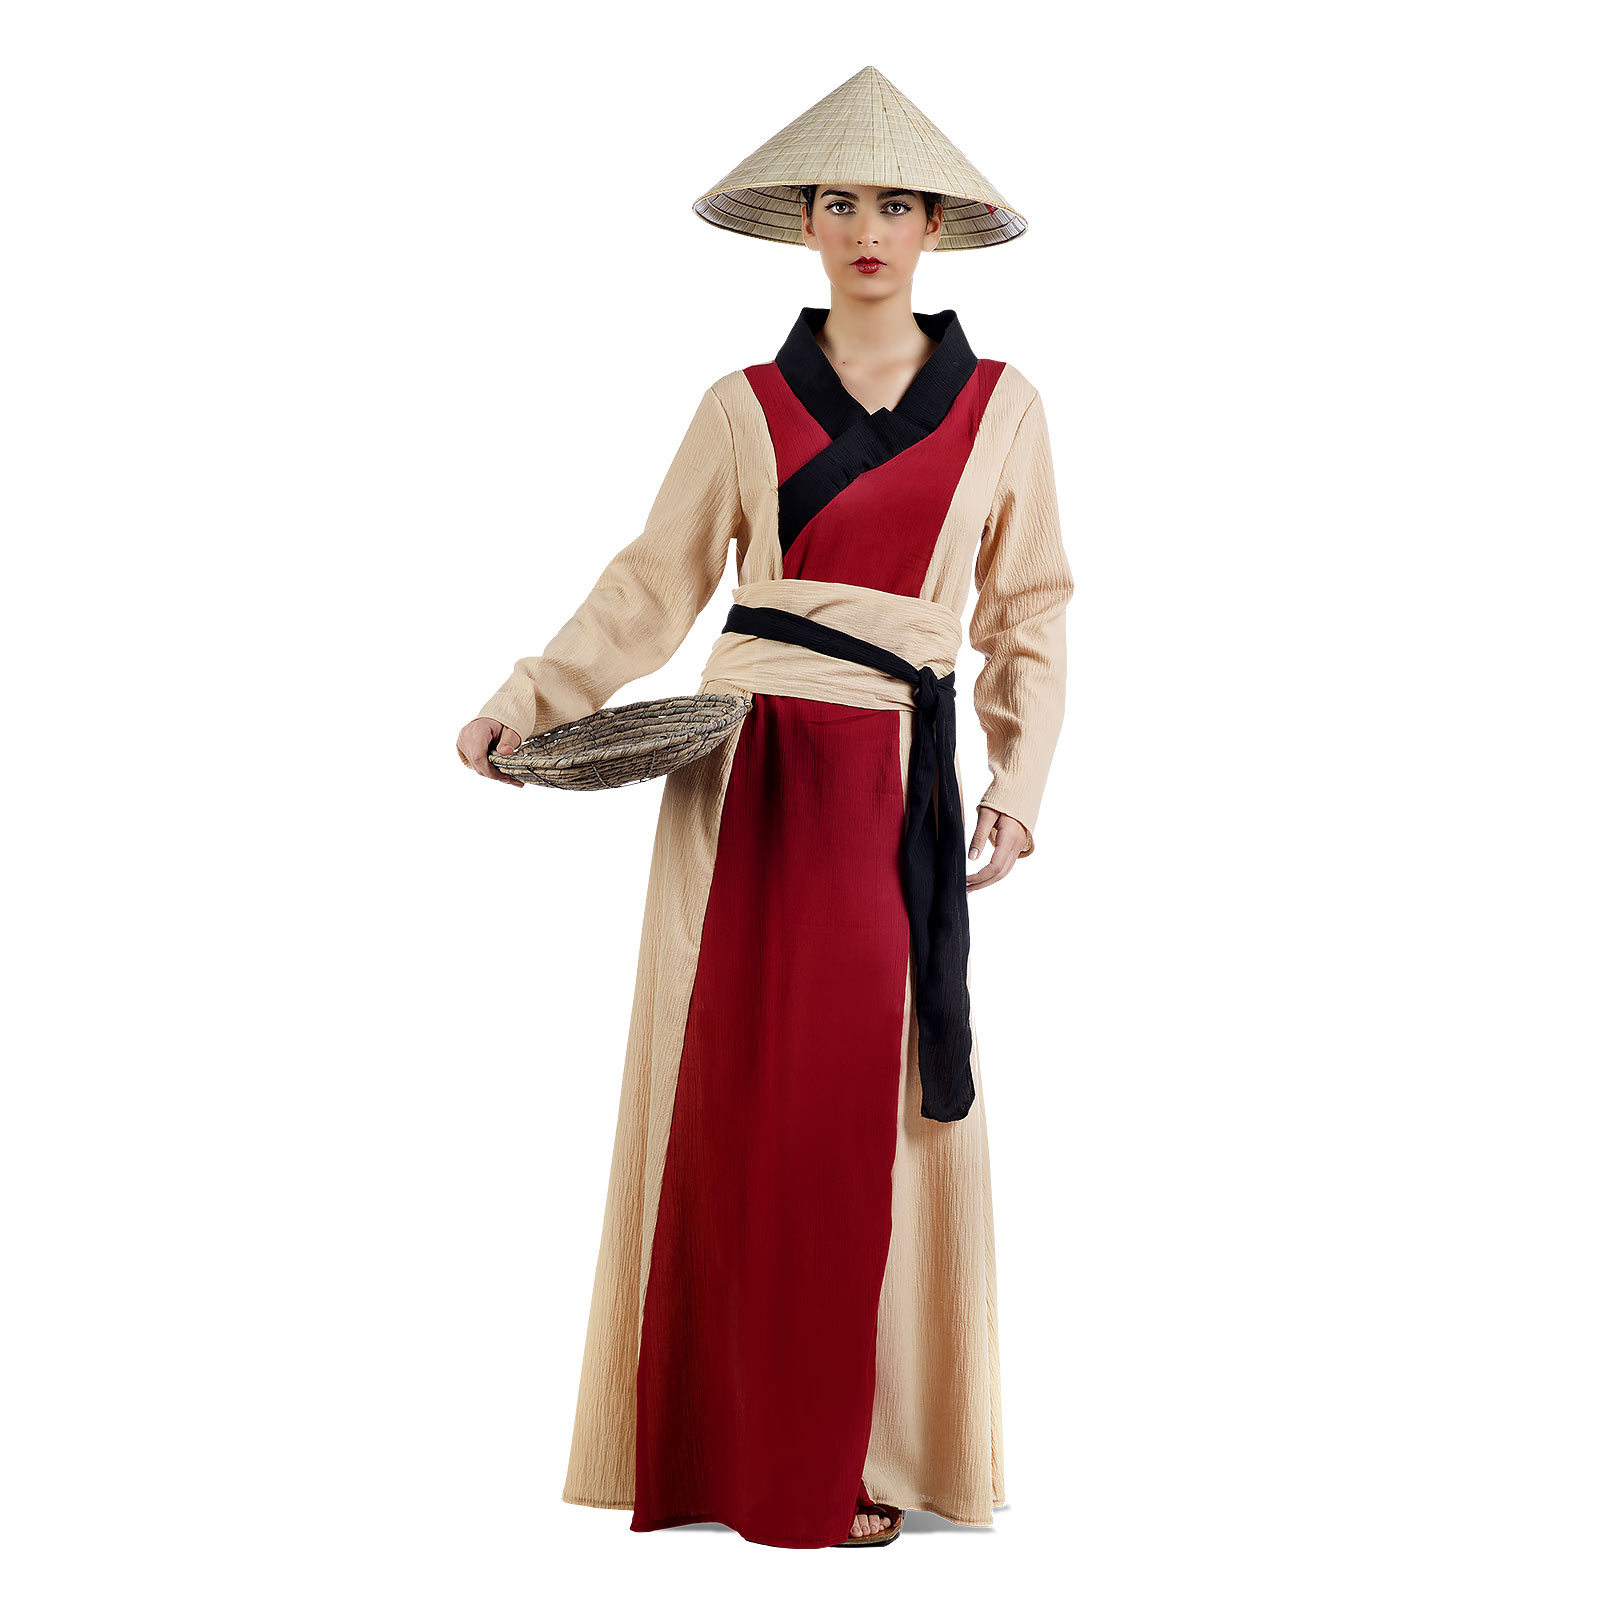 Chinesische Dame - Kostüm